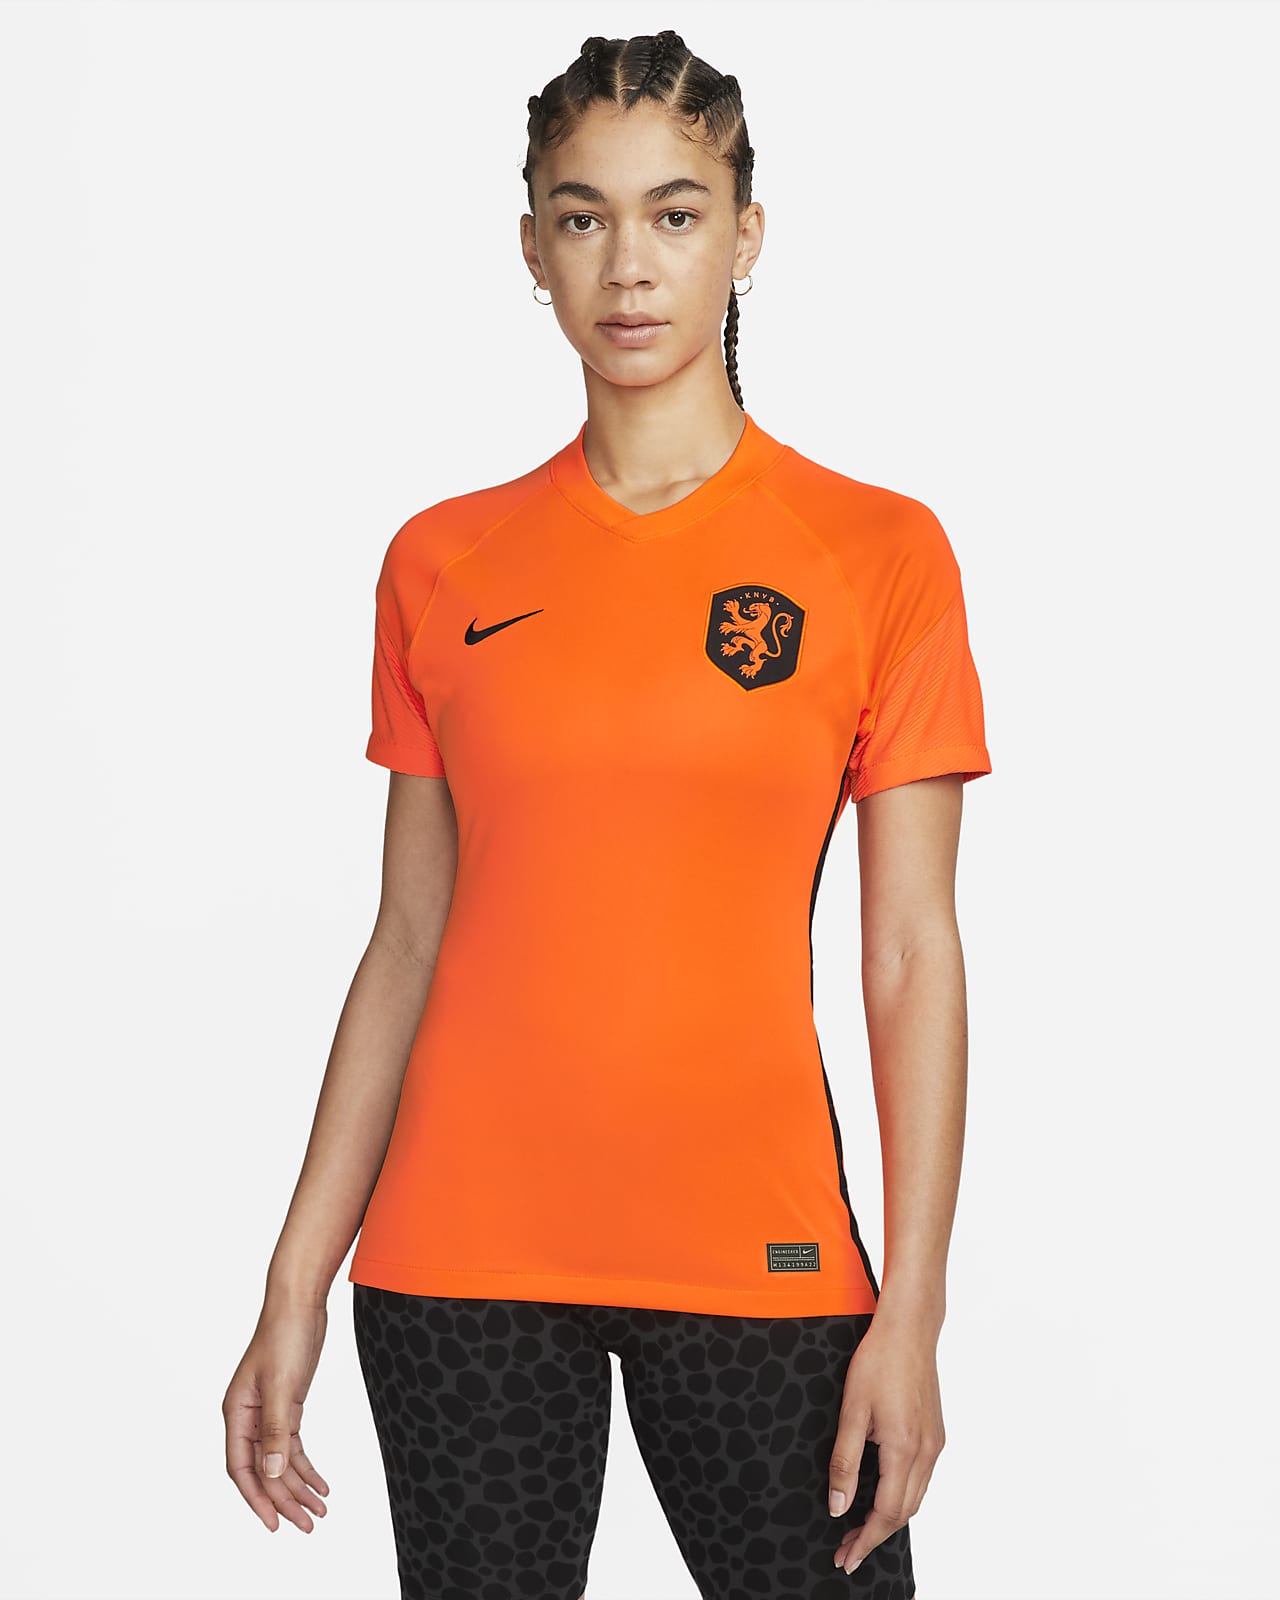 levenslang Wens Monarchie Nederland 2022 Stadium Thuis Nike voetbalshirt met Dri-FIT voor dames. Nike  BE